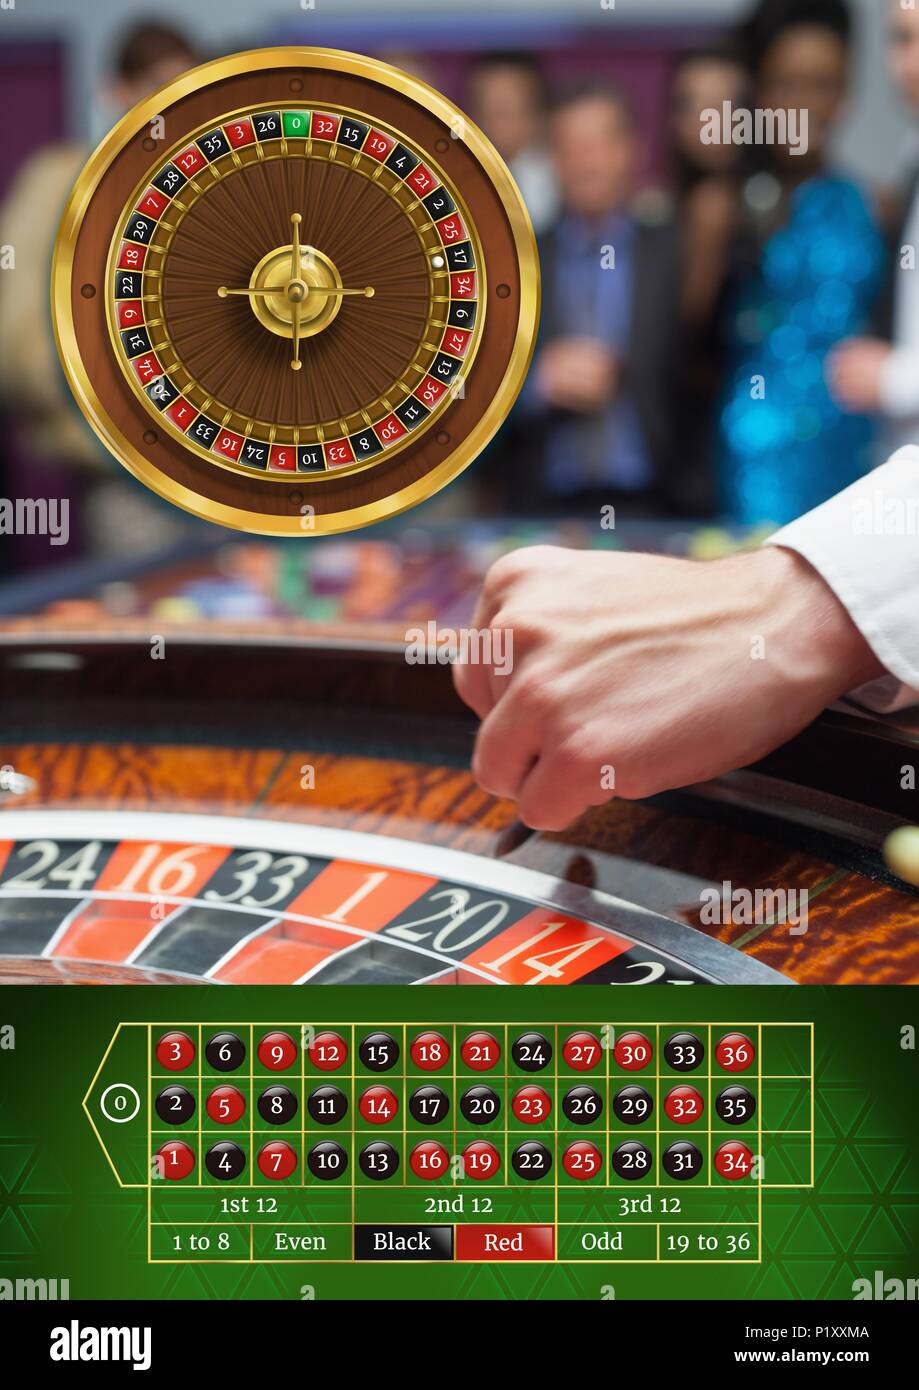 Roulette Spiel im Casino Stockfotografie - Alamy